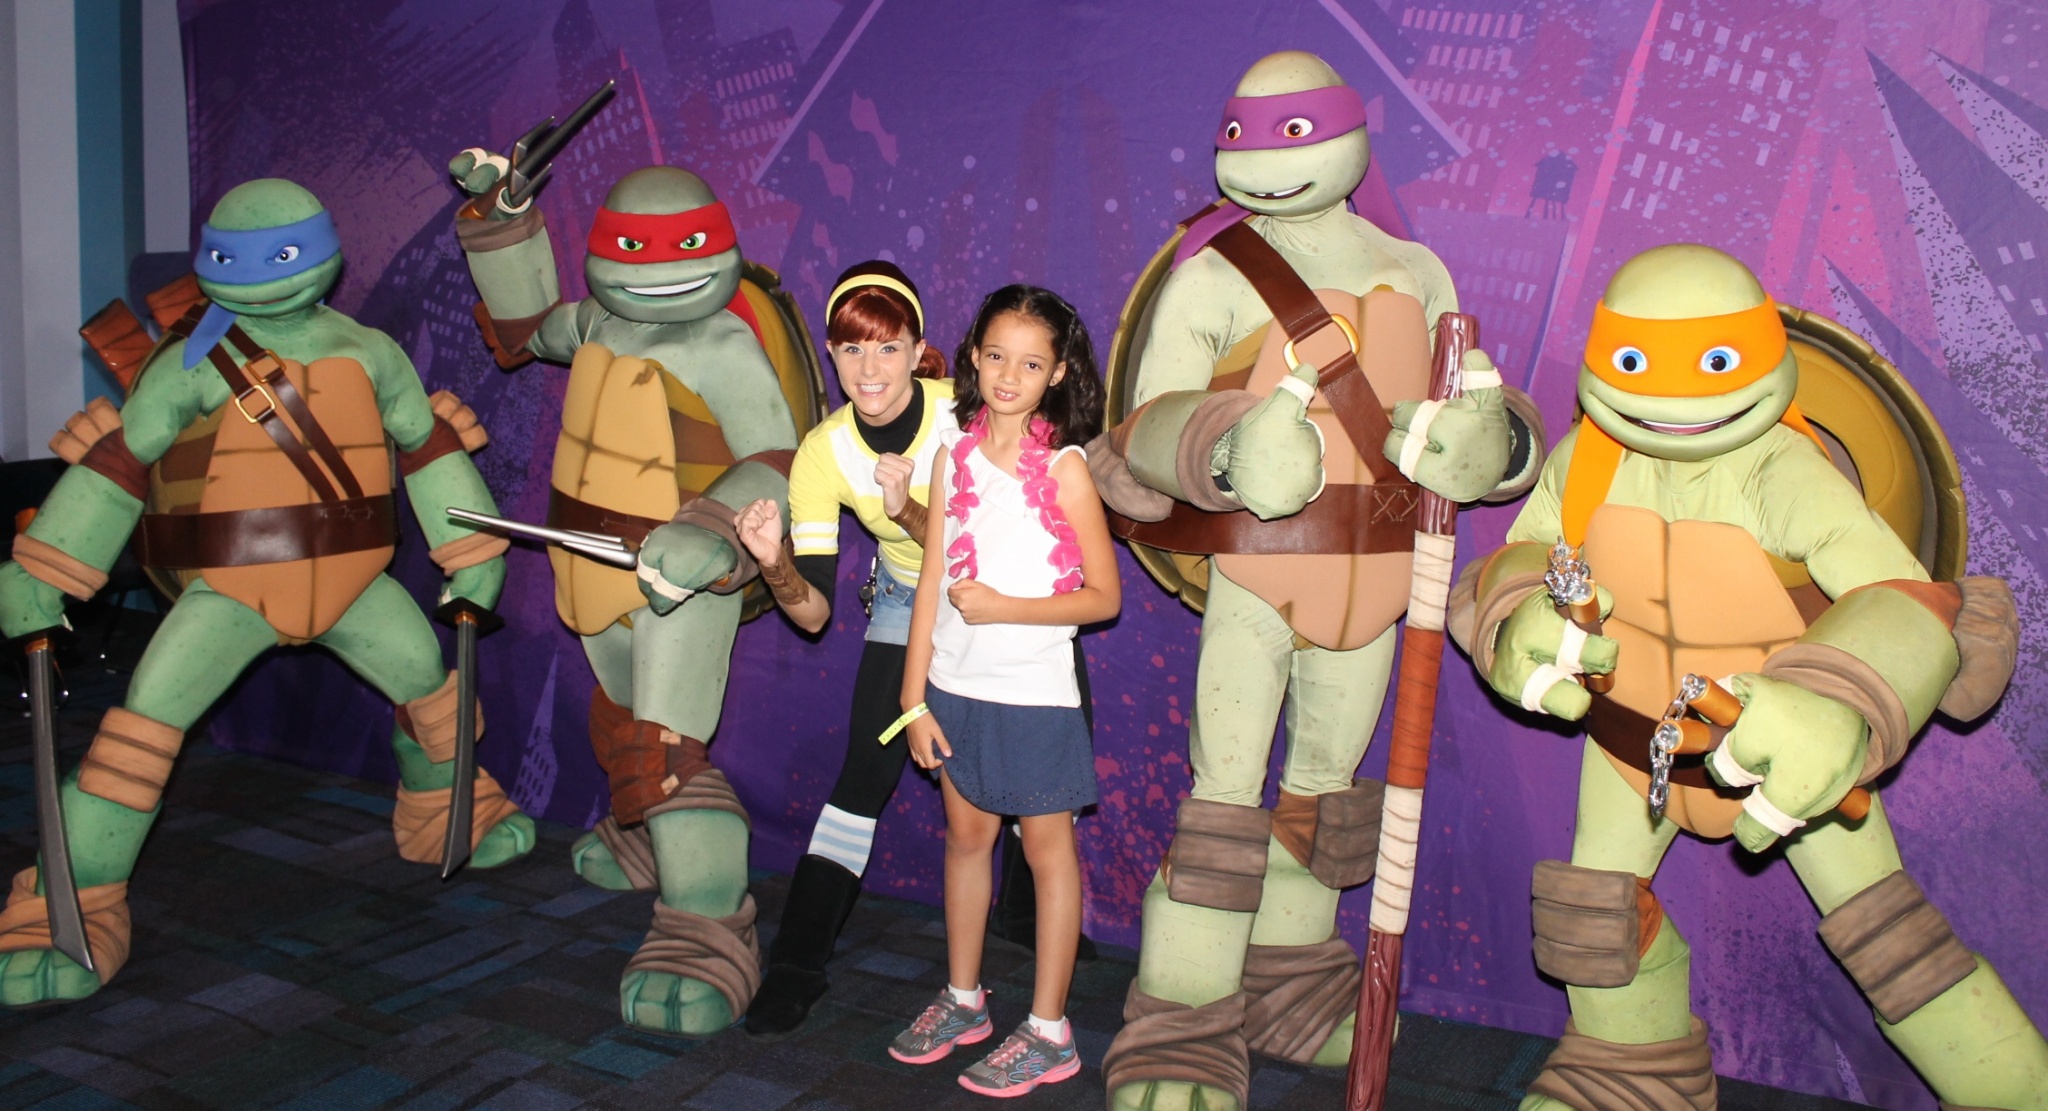 Teenage Mutant Ninja Turtles, Nickelodeon